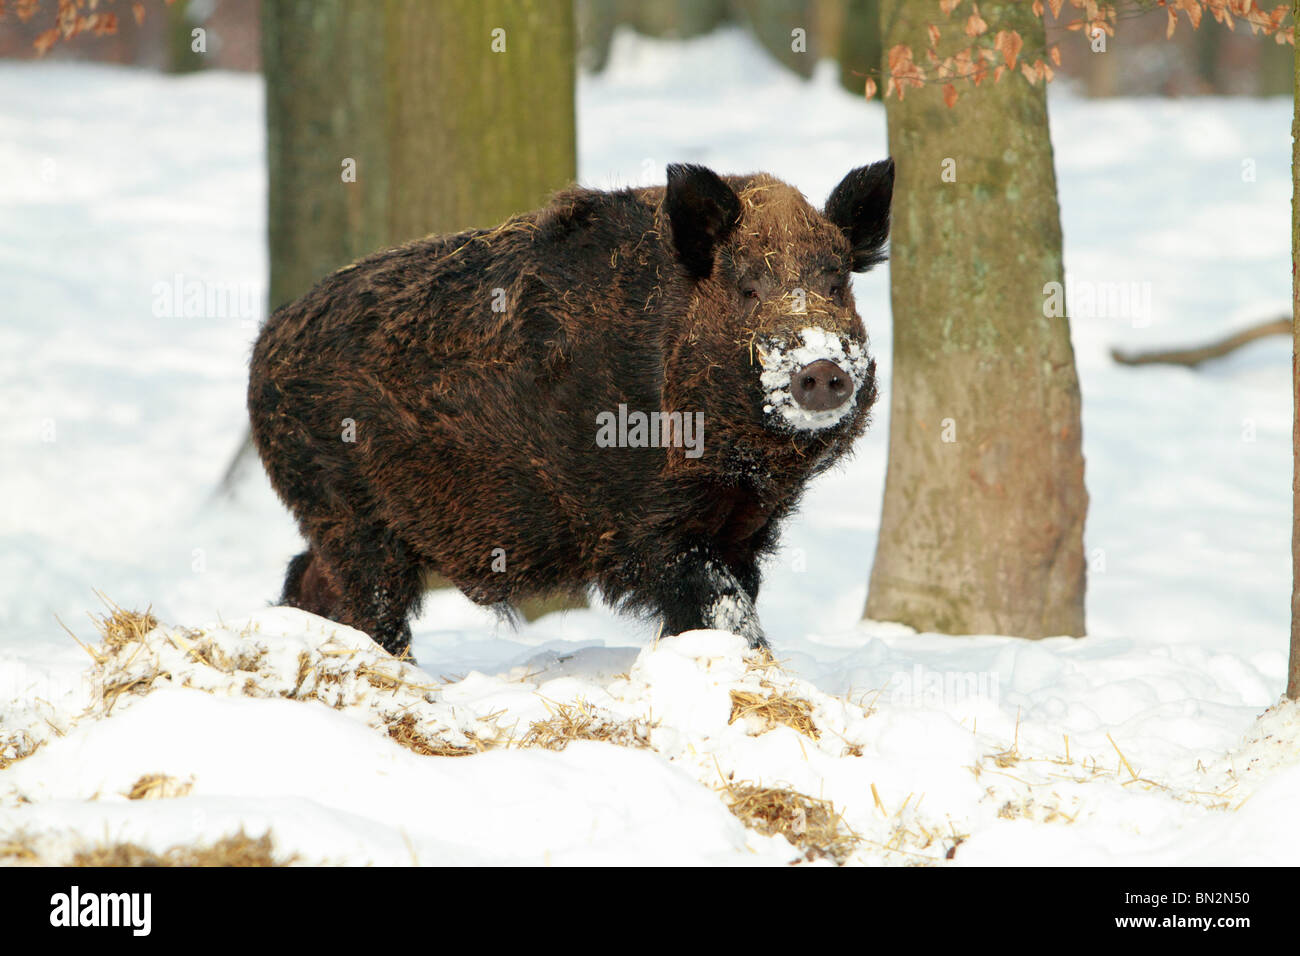 Cochon sauvage européenne, (Sus scrofa) mâle d'un animal ou d'un sanglier, d'alerte permanent dans la forêt couverte de neige, Allemagne Banque D'Images